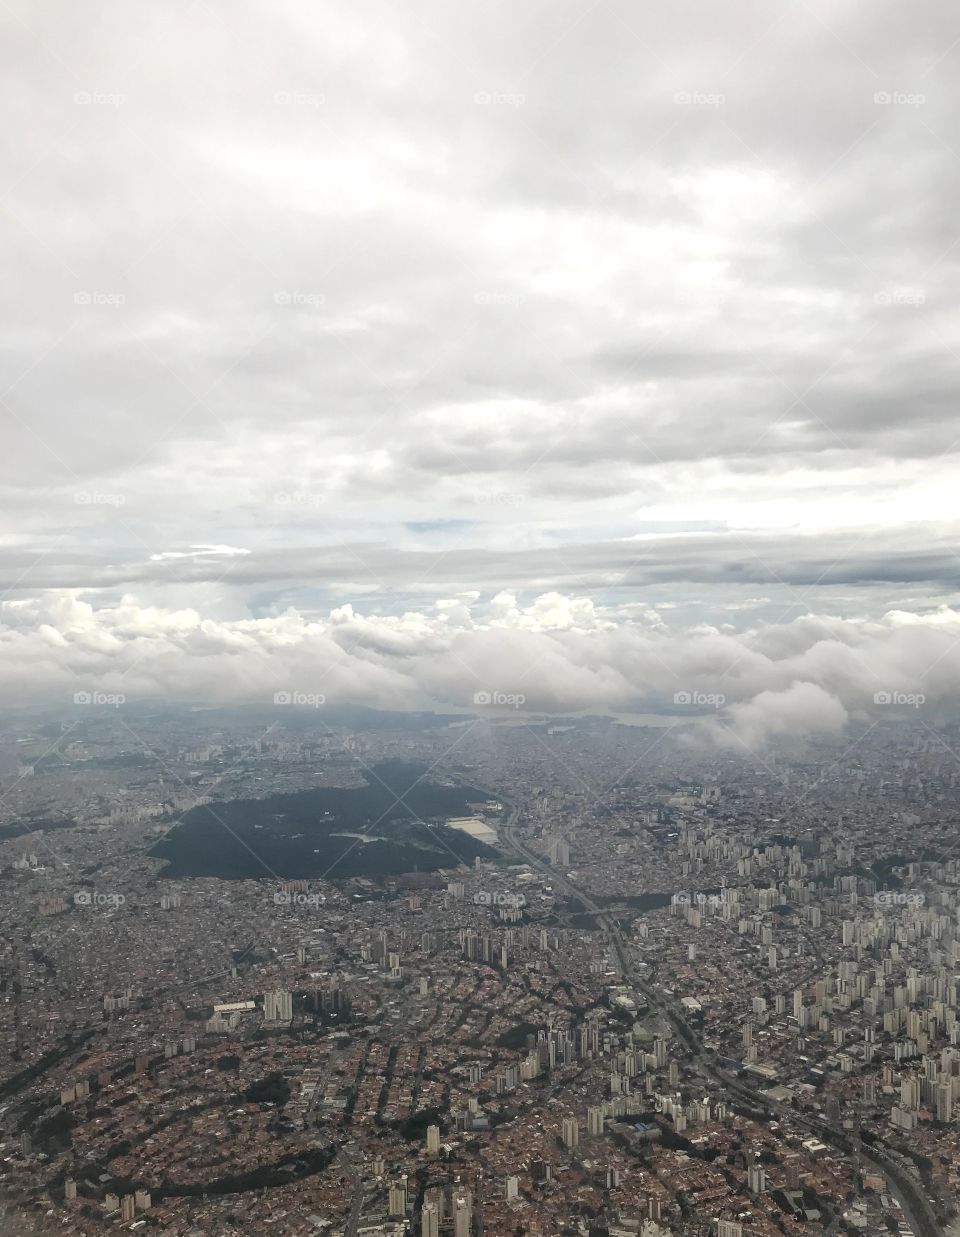 Cidade de Guarulhos Sao Paulo vista de cima.